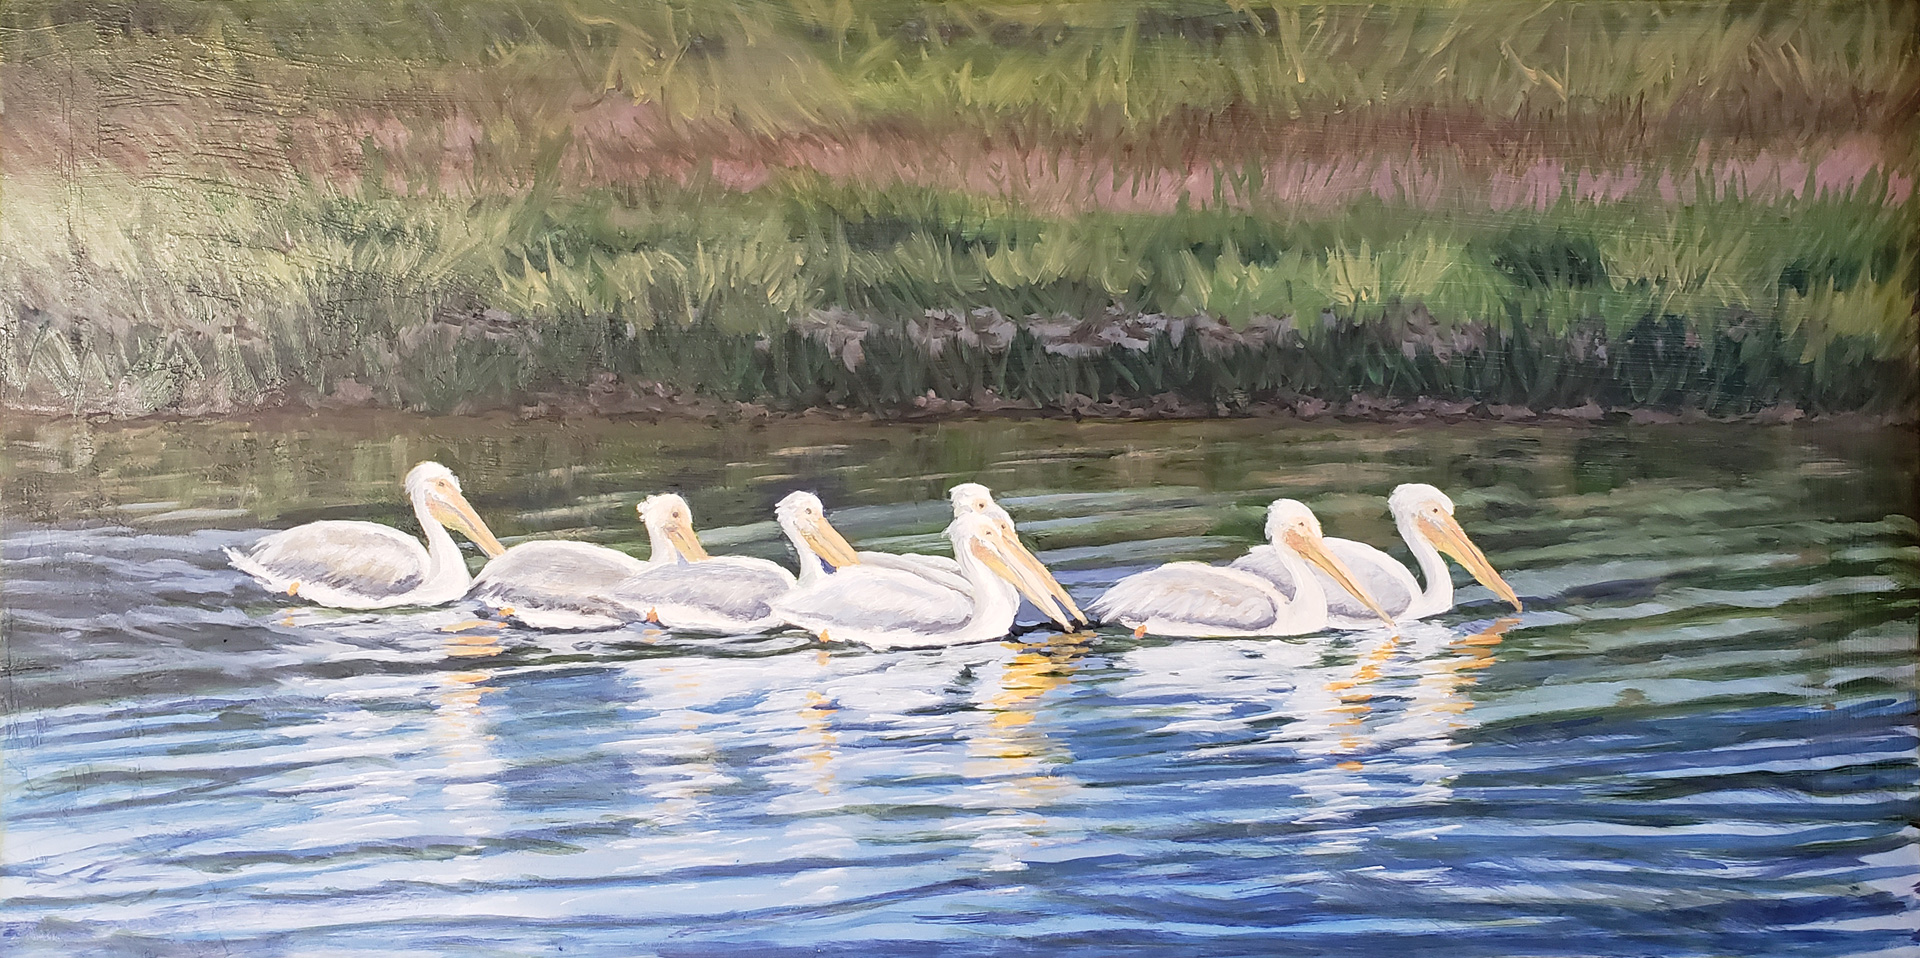 Pelicans, Oil on board, 24 x 18